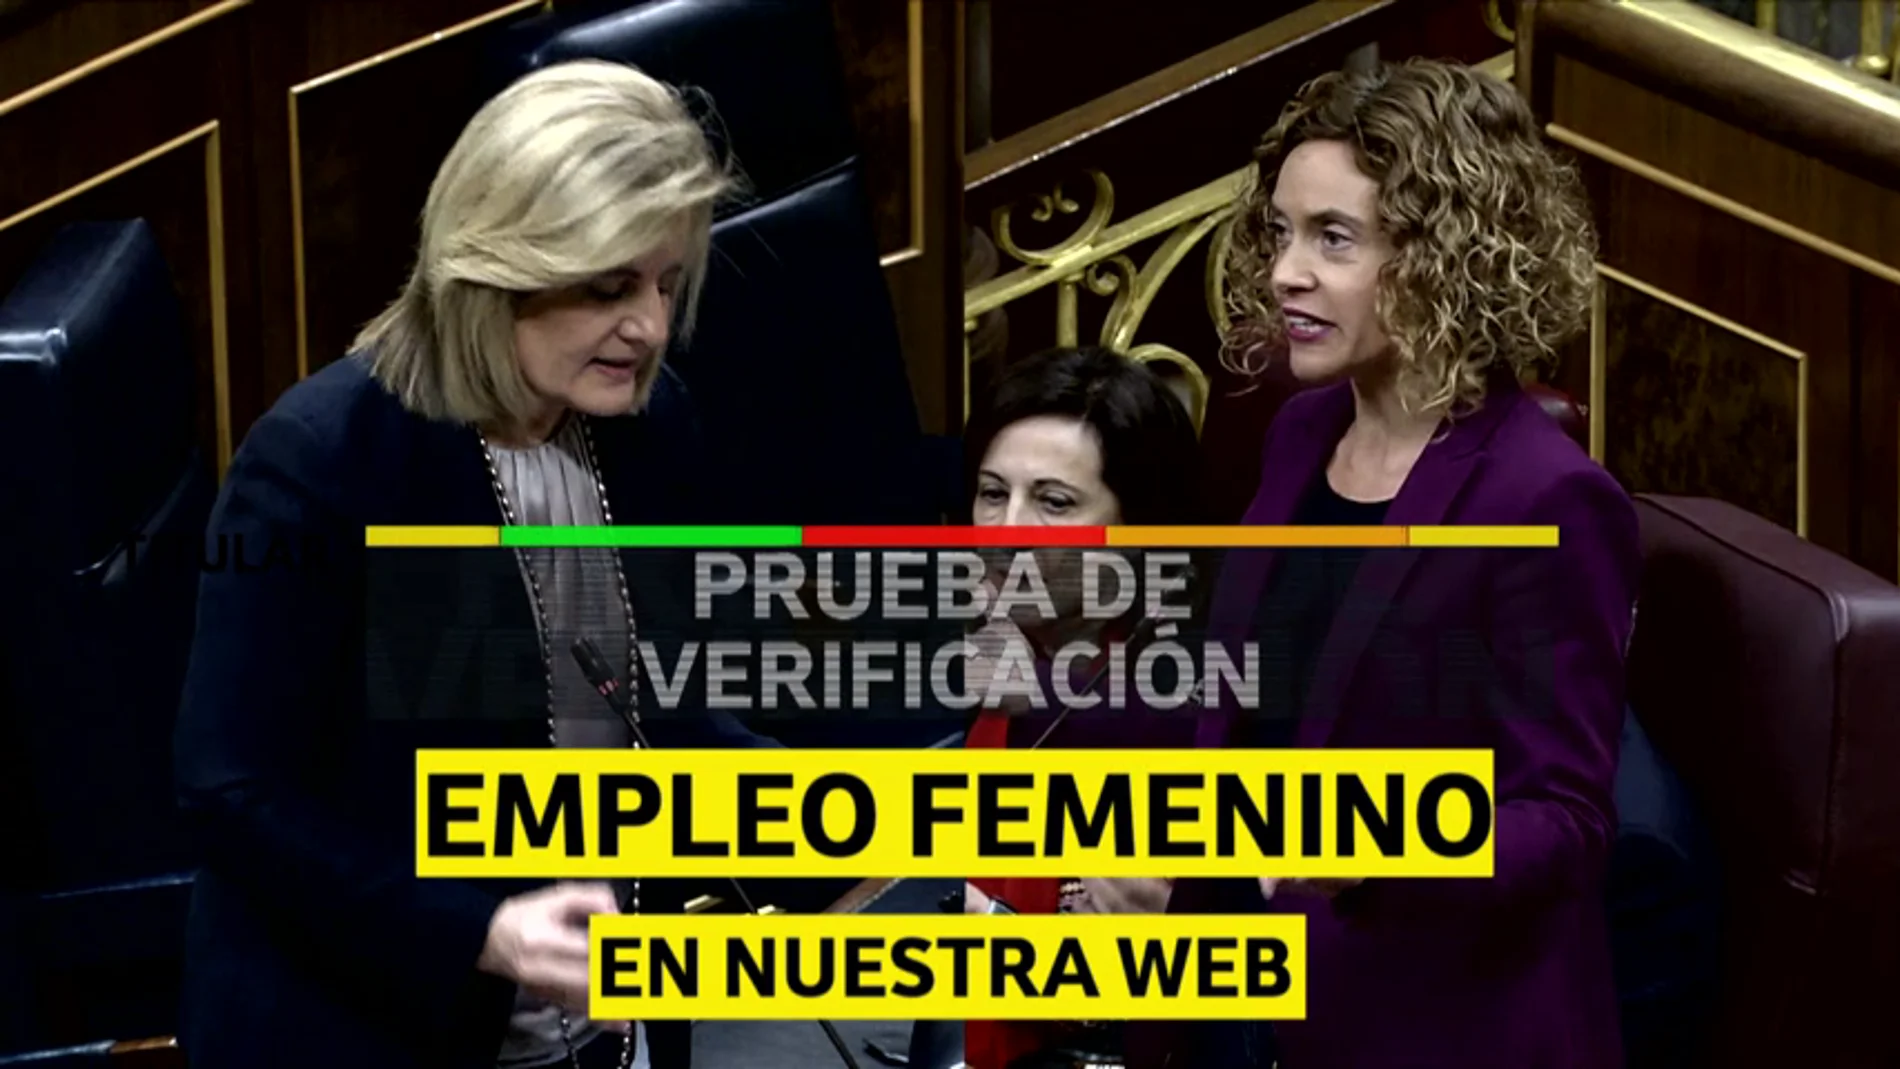 Lo que la ministra Báñez no dice sobre el empleo femenino 